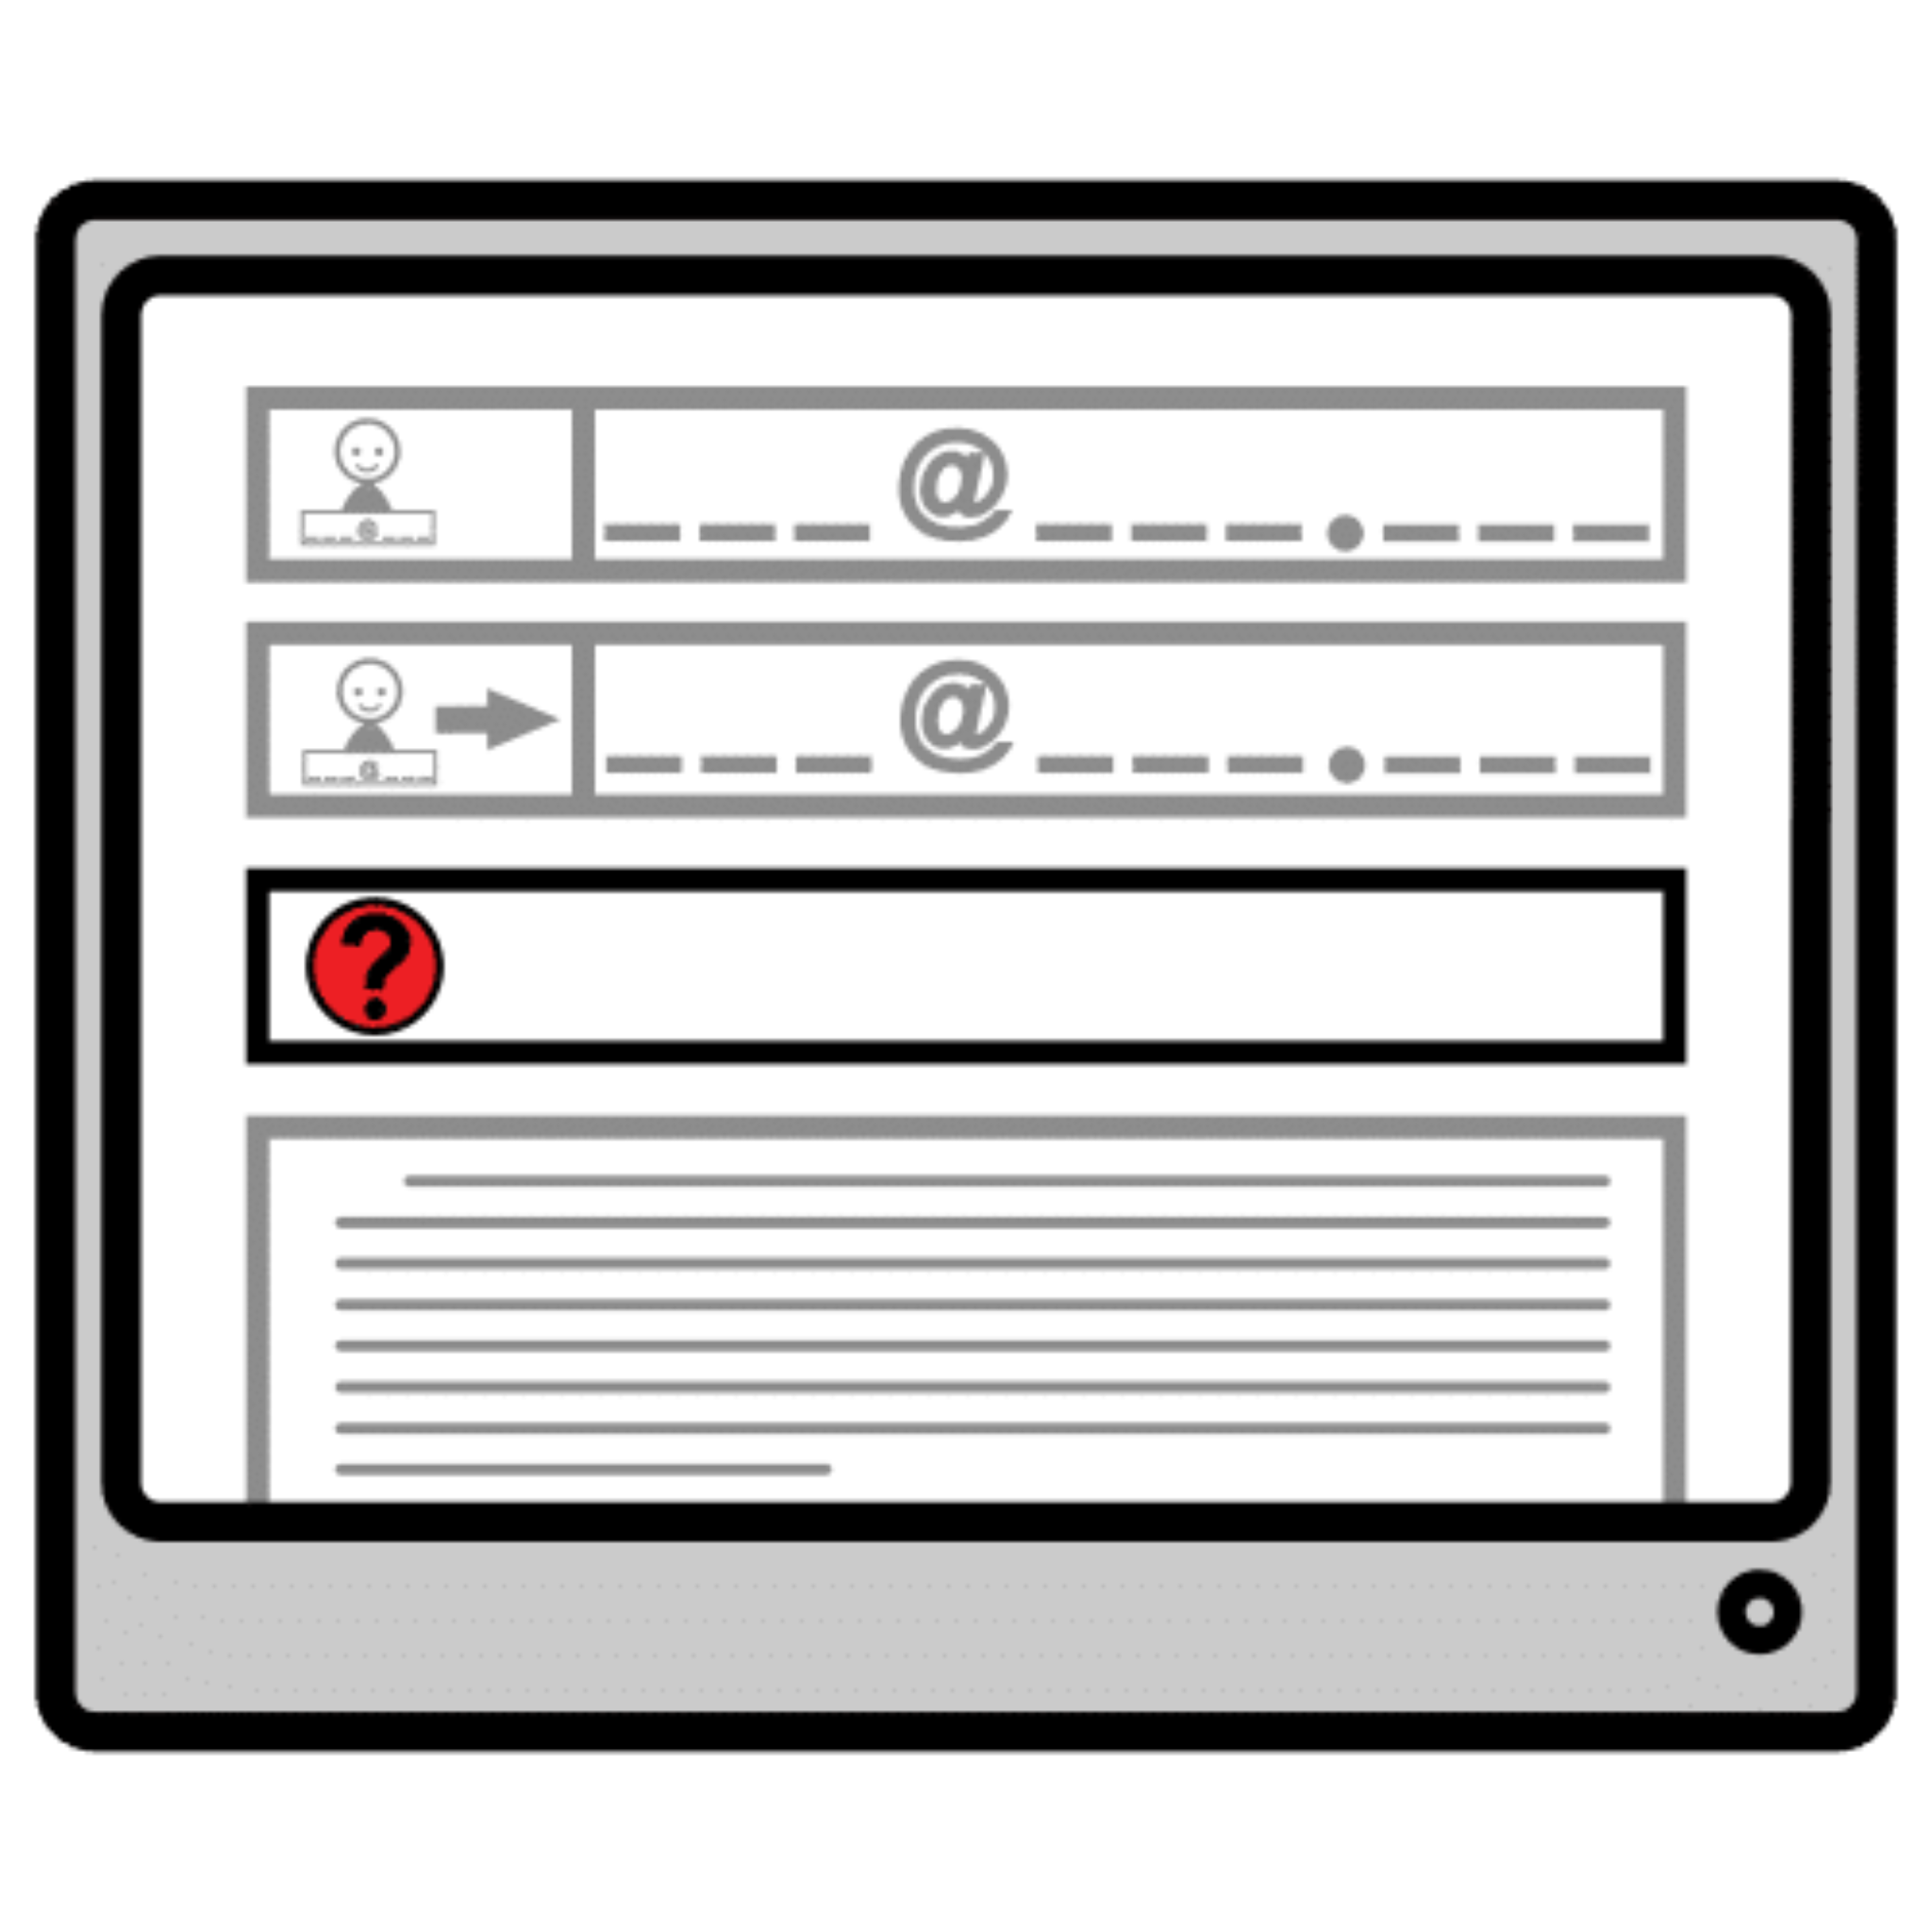 La imagen muestra un correo electrónico con la zona del asunto remarcada en negrita, con un círculo rojo y una interrogación.